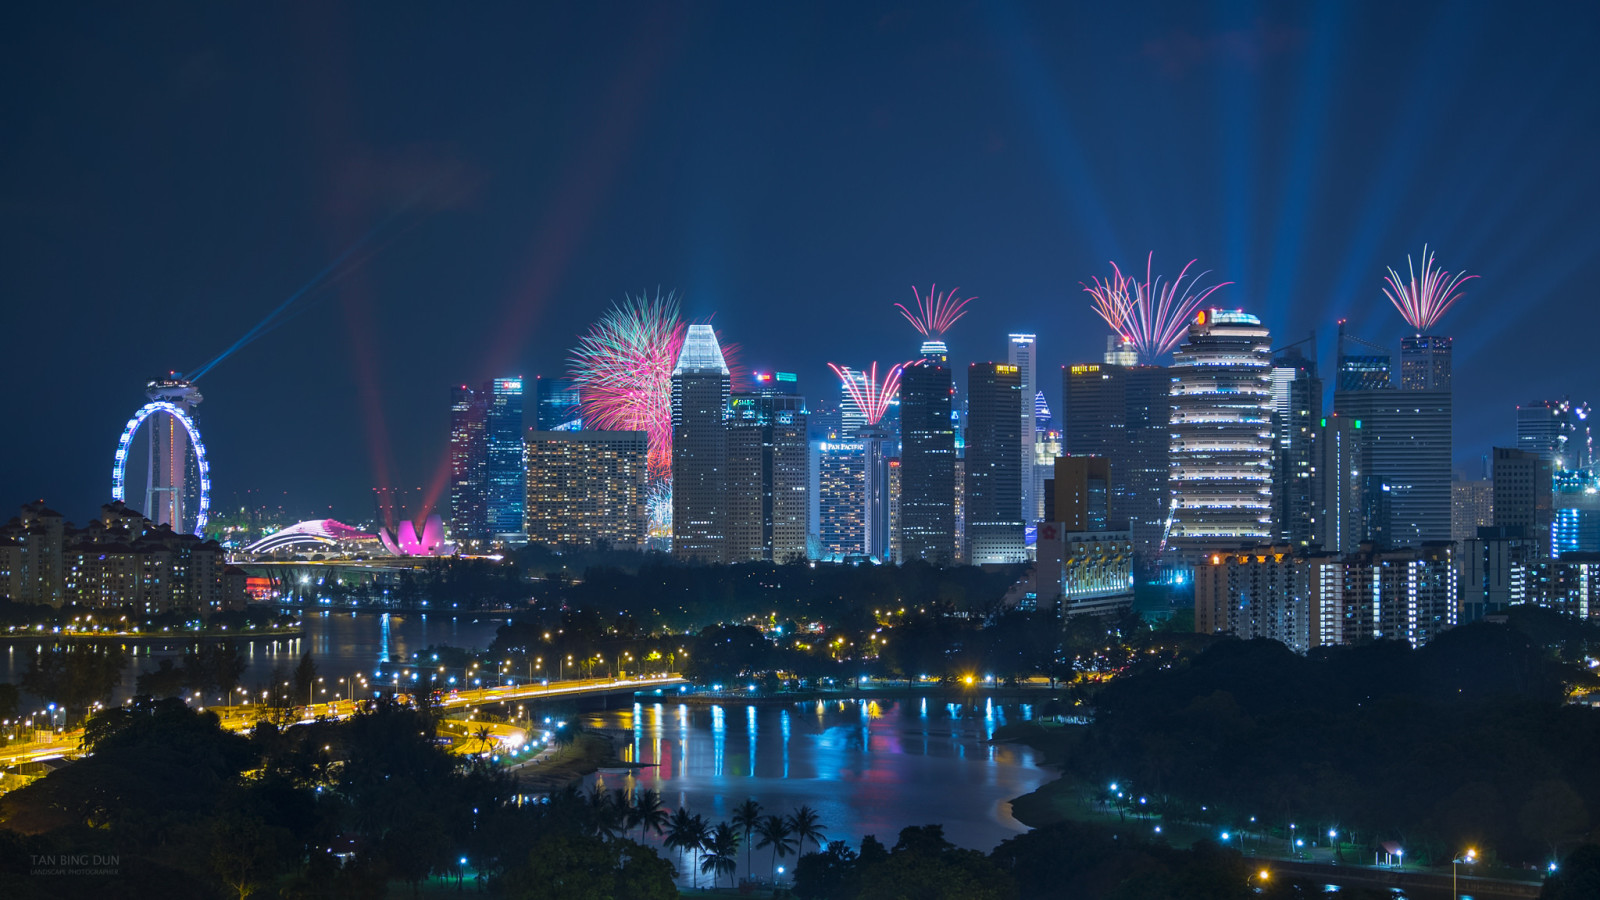 Thành phố đêm, tòa nhà chọc trời, xây dựng, Singapore, bắn pháo hoa, bởi Tan Bing Dun, Kallang